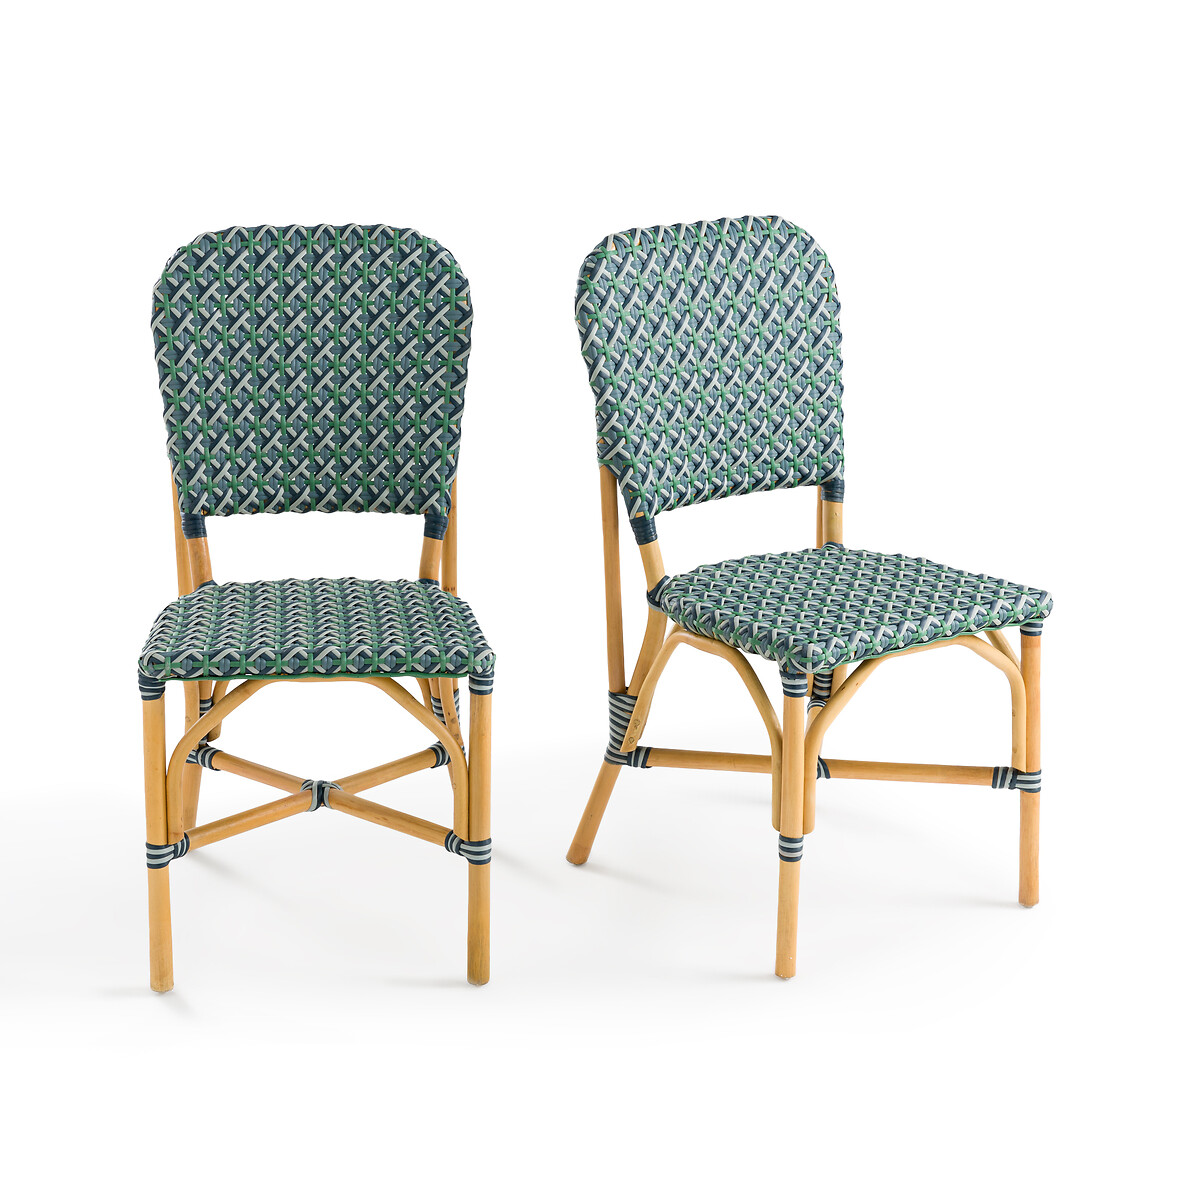 Комплект из 2 плетеных стульев из ротанга Musette единый размер синий комплект из 2 плетеных стульев из ротанга musette единый размер синий